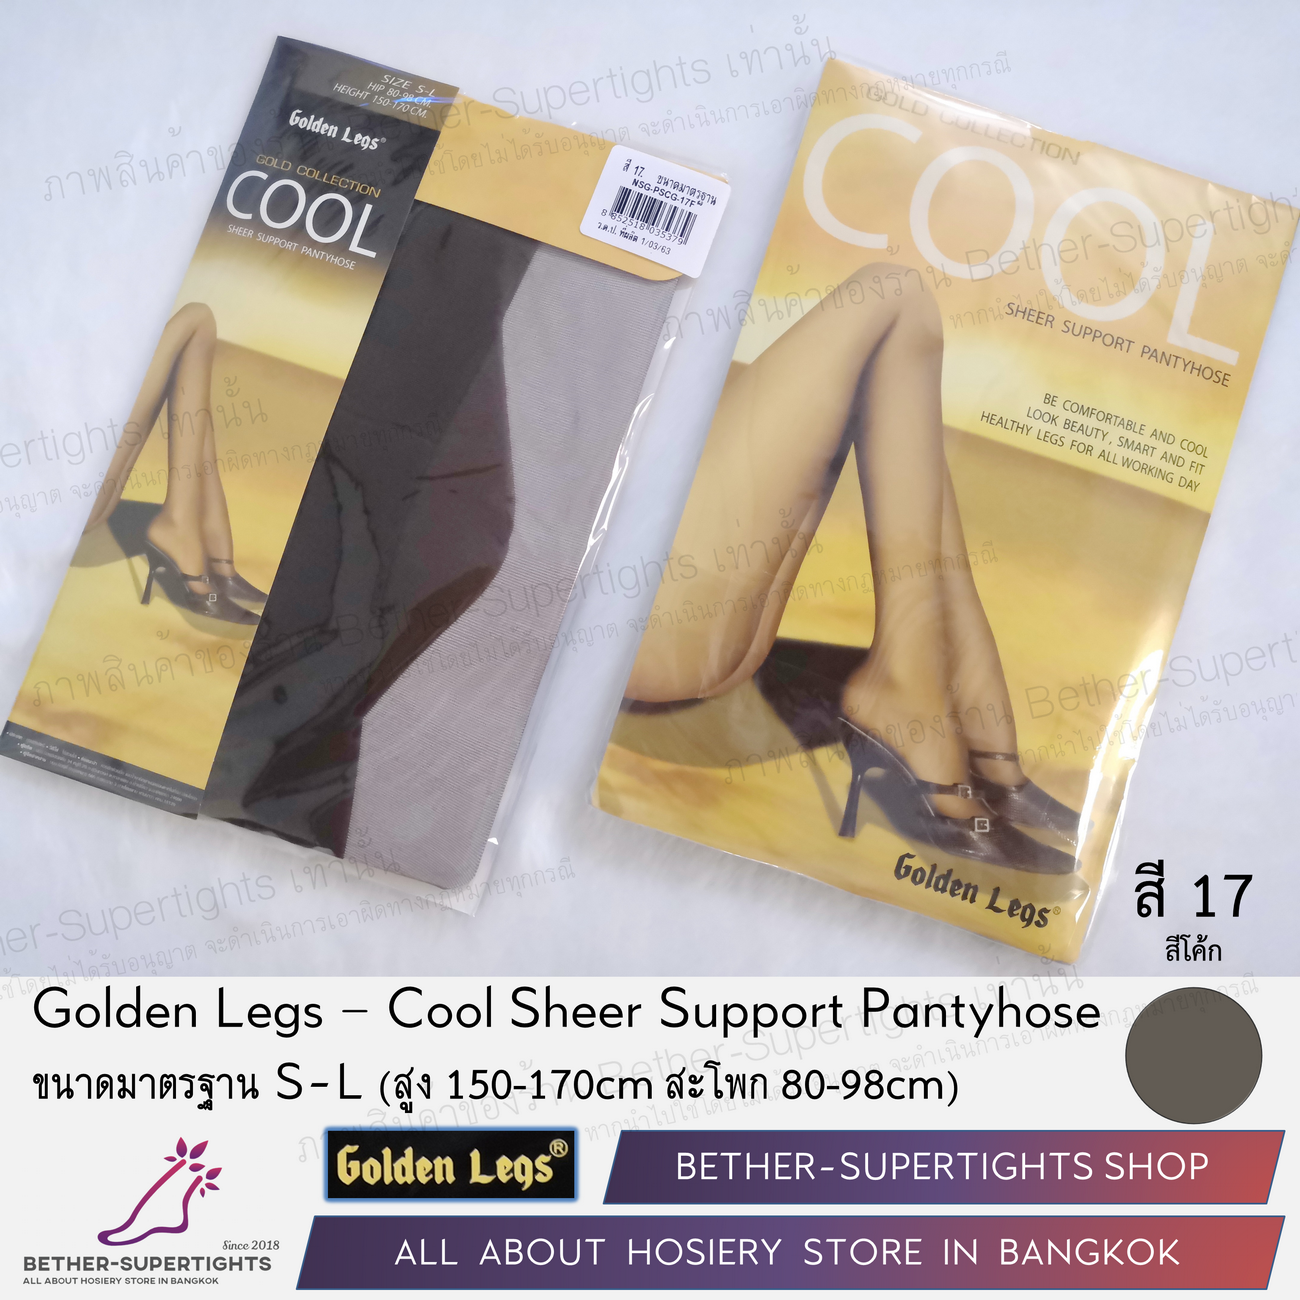 ถุงน่องเชียร์ซัพพอร์ท Golden Legs - Cool Support Pantyhose (1 คู่) - เครือเดียวกันกับเชอรีล่อน